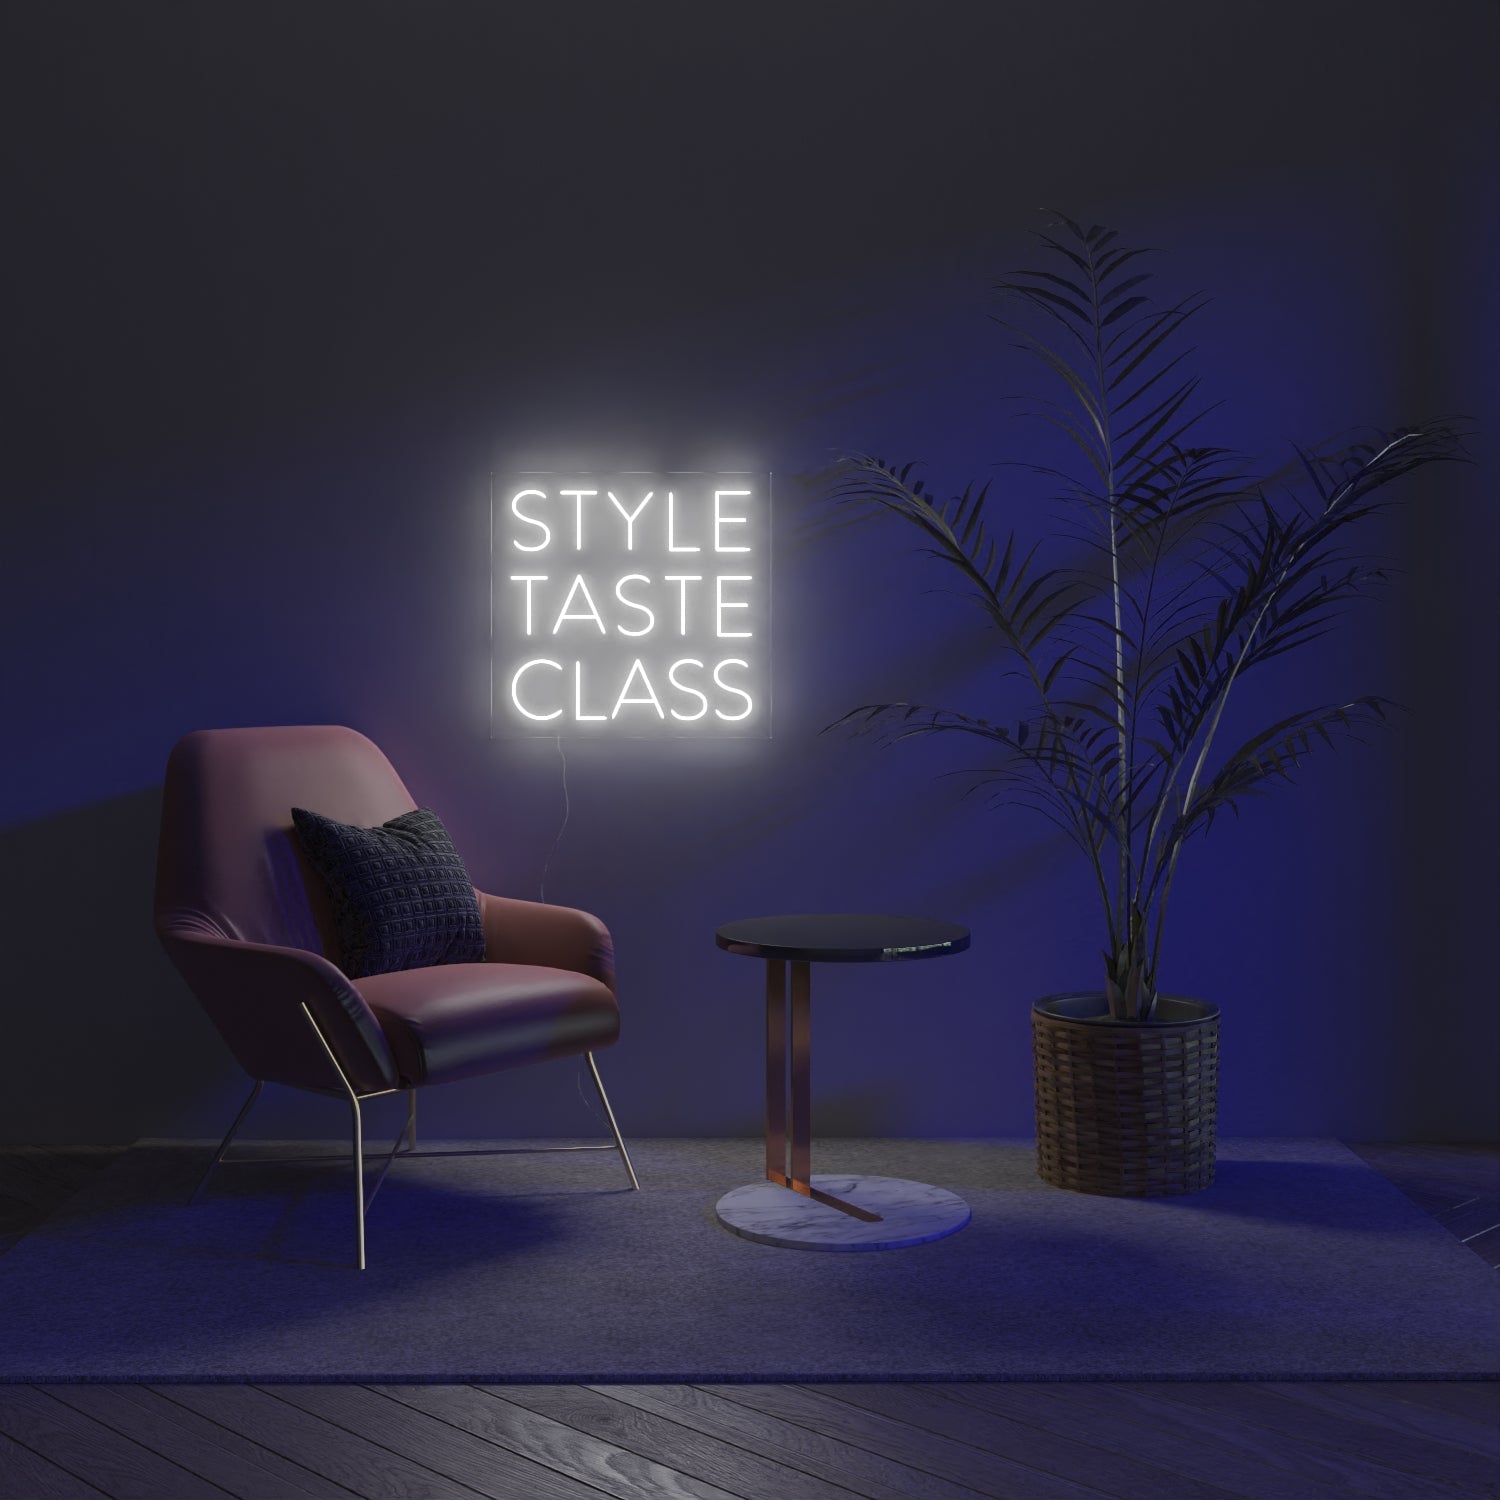 Style, Taste, Class by Bobby Berk, Neon Tabela - Neonbir